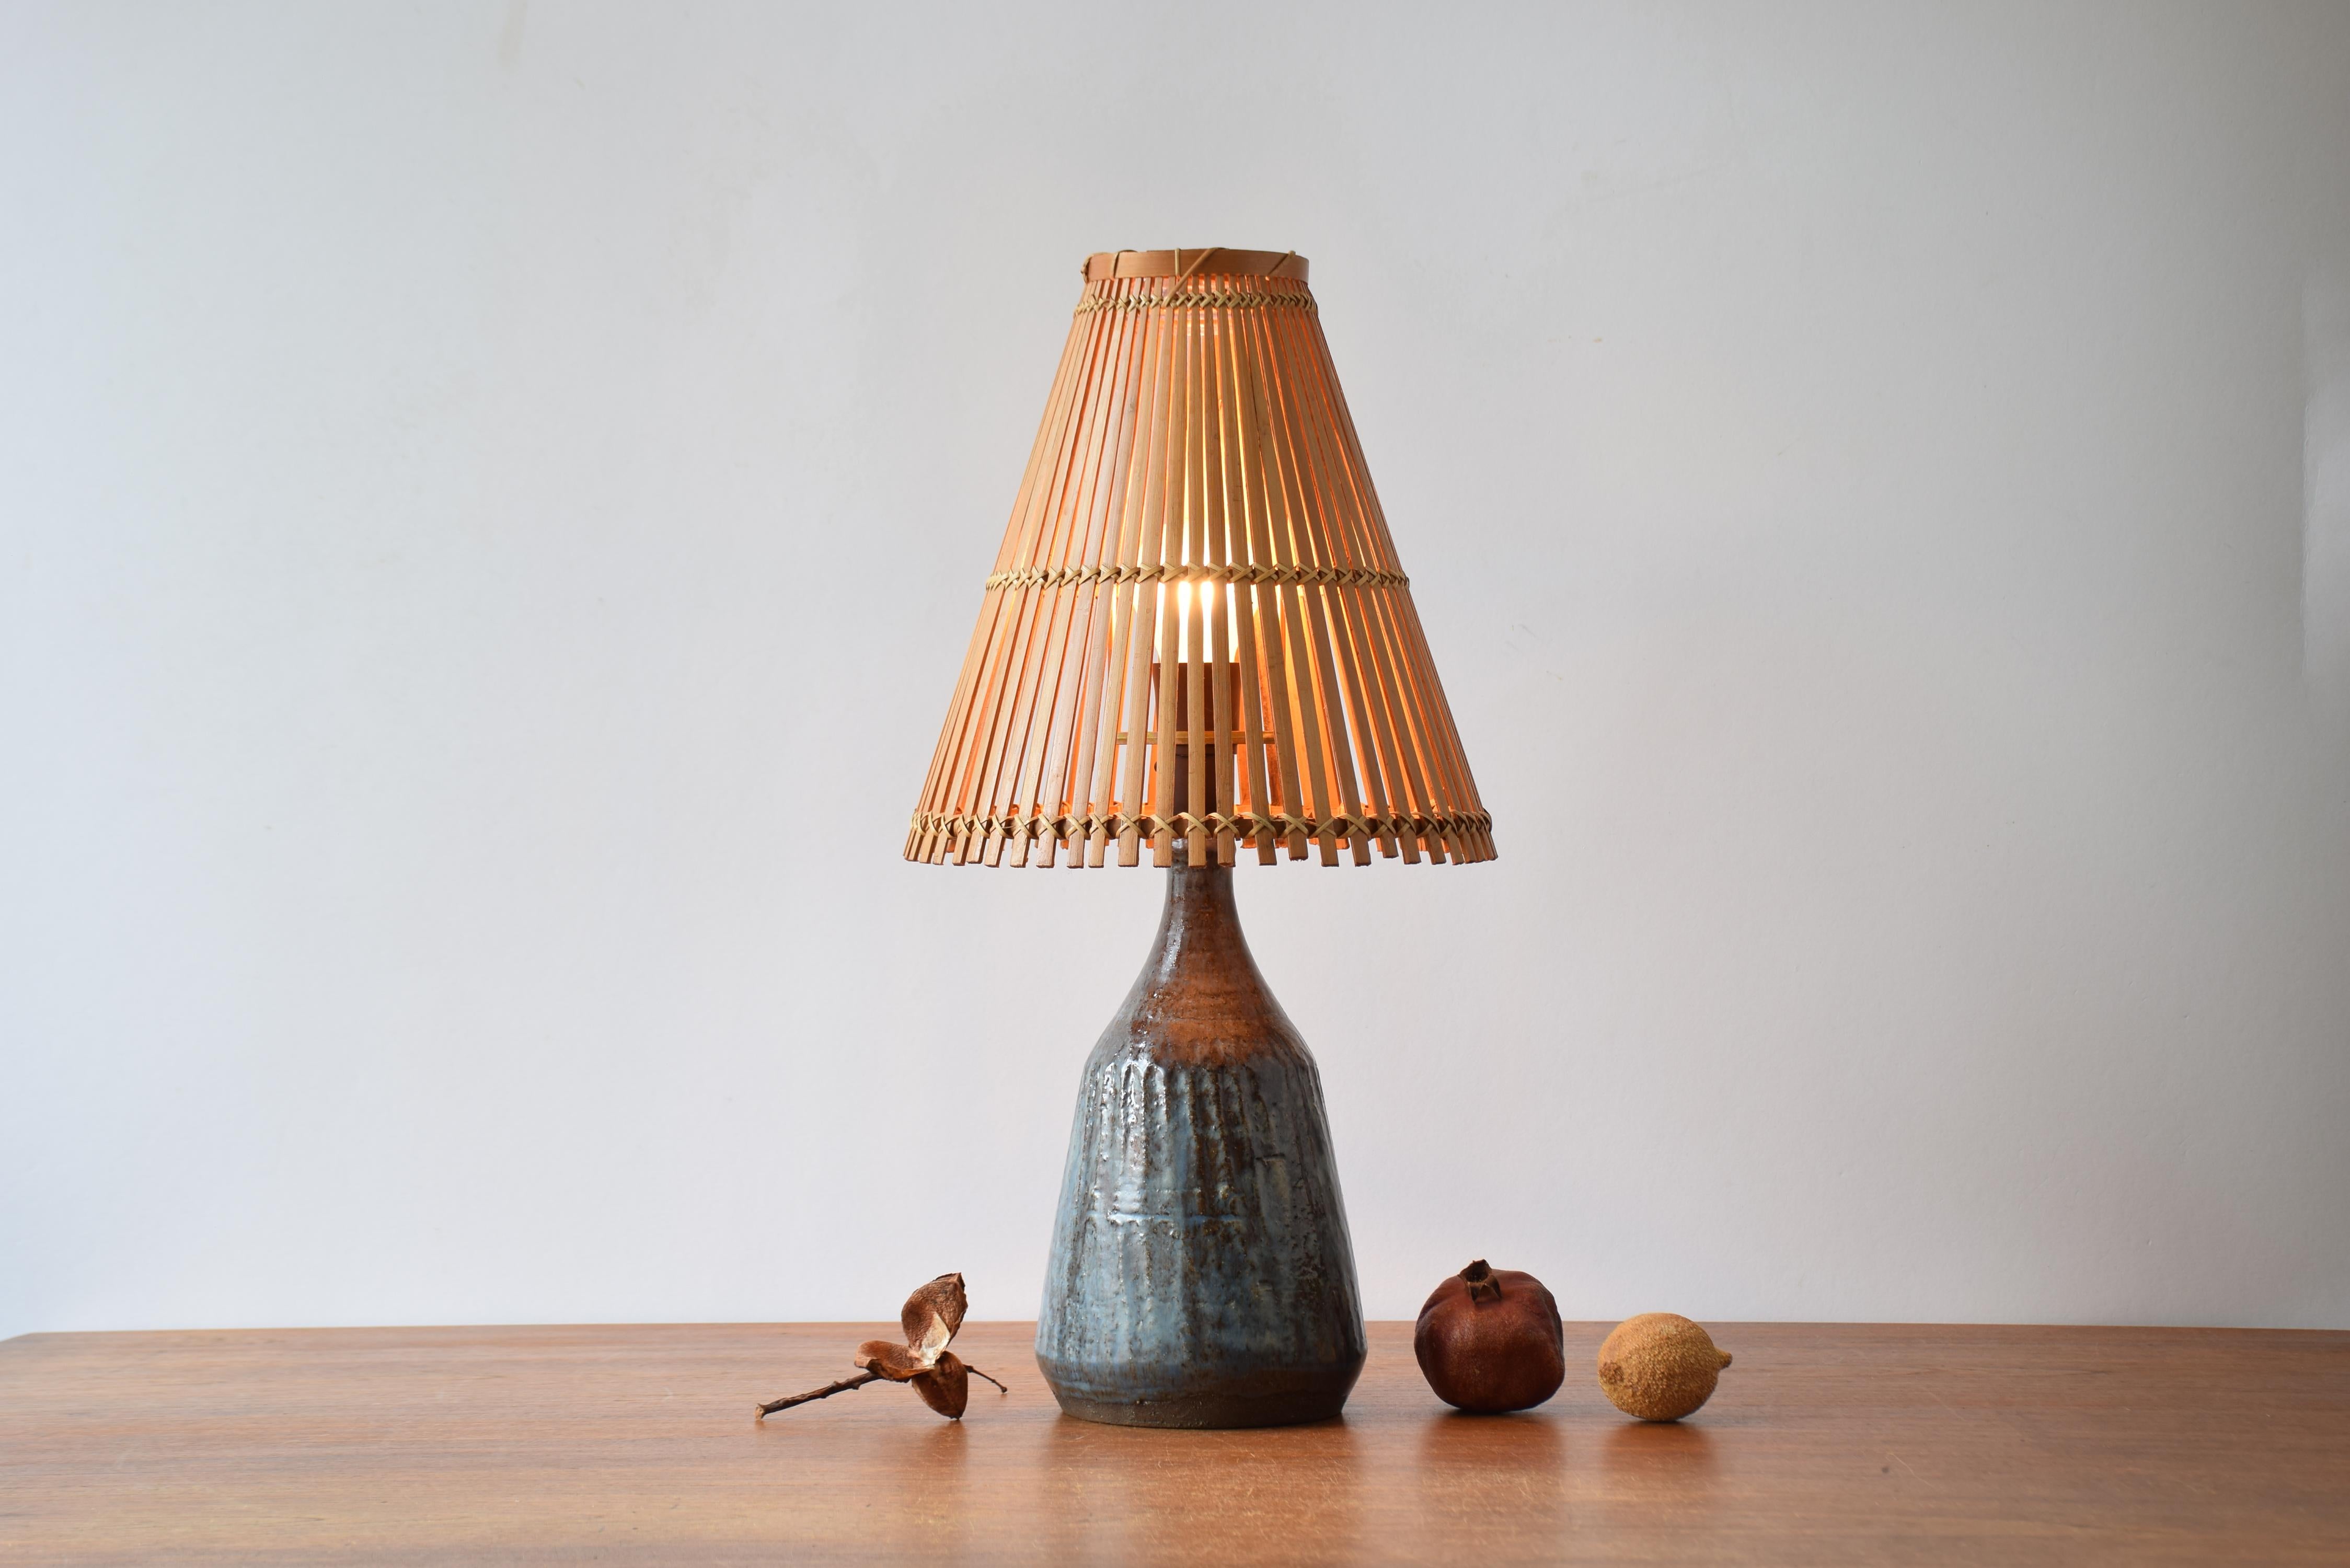 Keramik-Tischlampe aus der Mitte des Jahrhunderts aus einer dänischen Studio-Werkstatt. Hergestellt ca. 1950er bis 1960er Jahre. Die Lampe wird mit einem Lampenschirm aus Bambus im Vintage-Stil geliefert.

Die Lampe hat eine blaue und braune